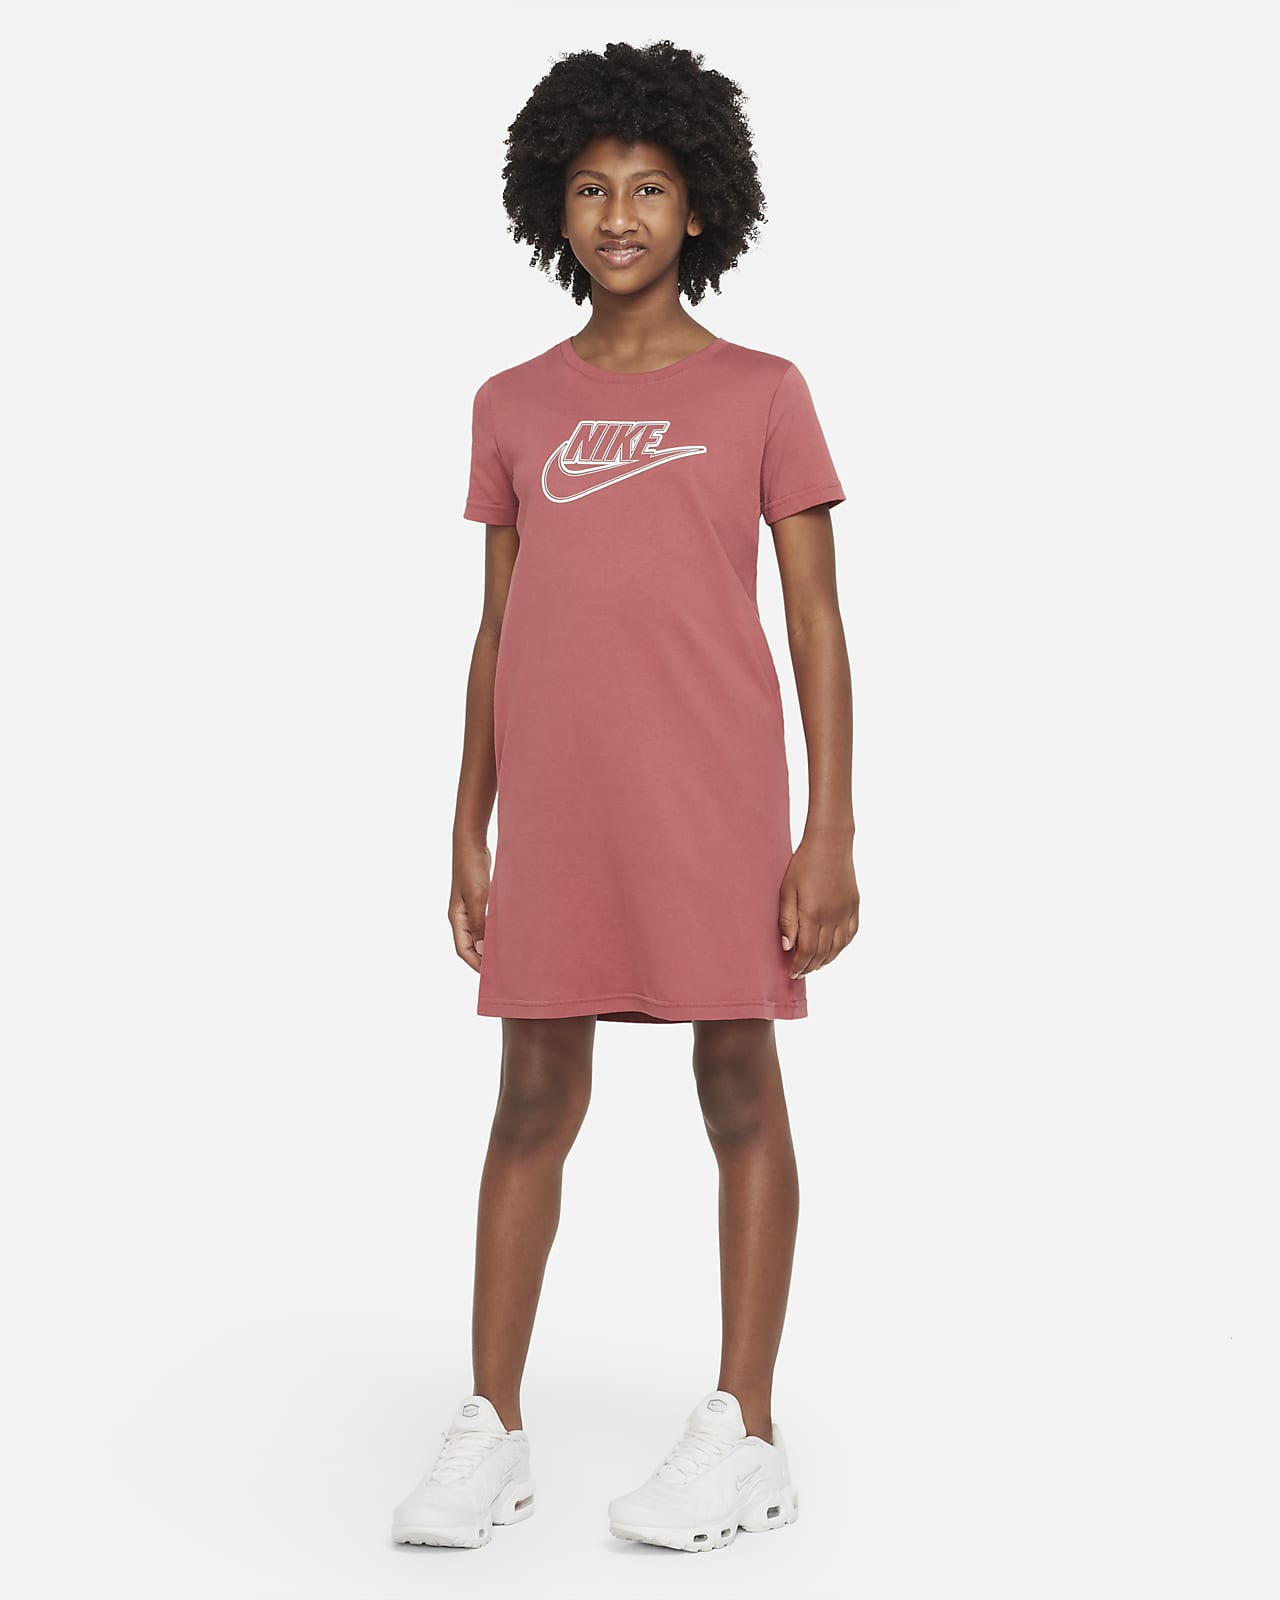 Nike Sportswear Older (Girls') T-Shirt AU